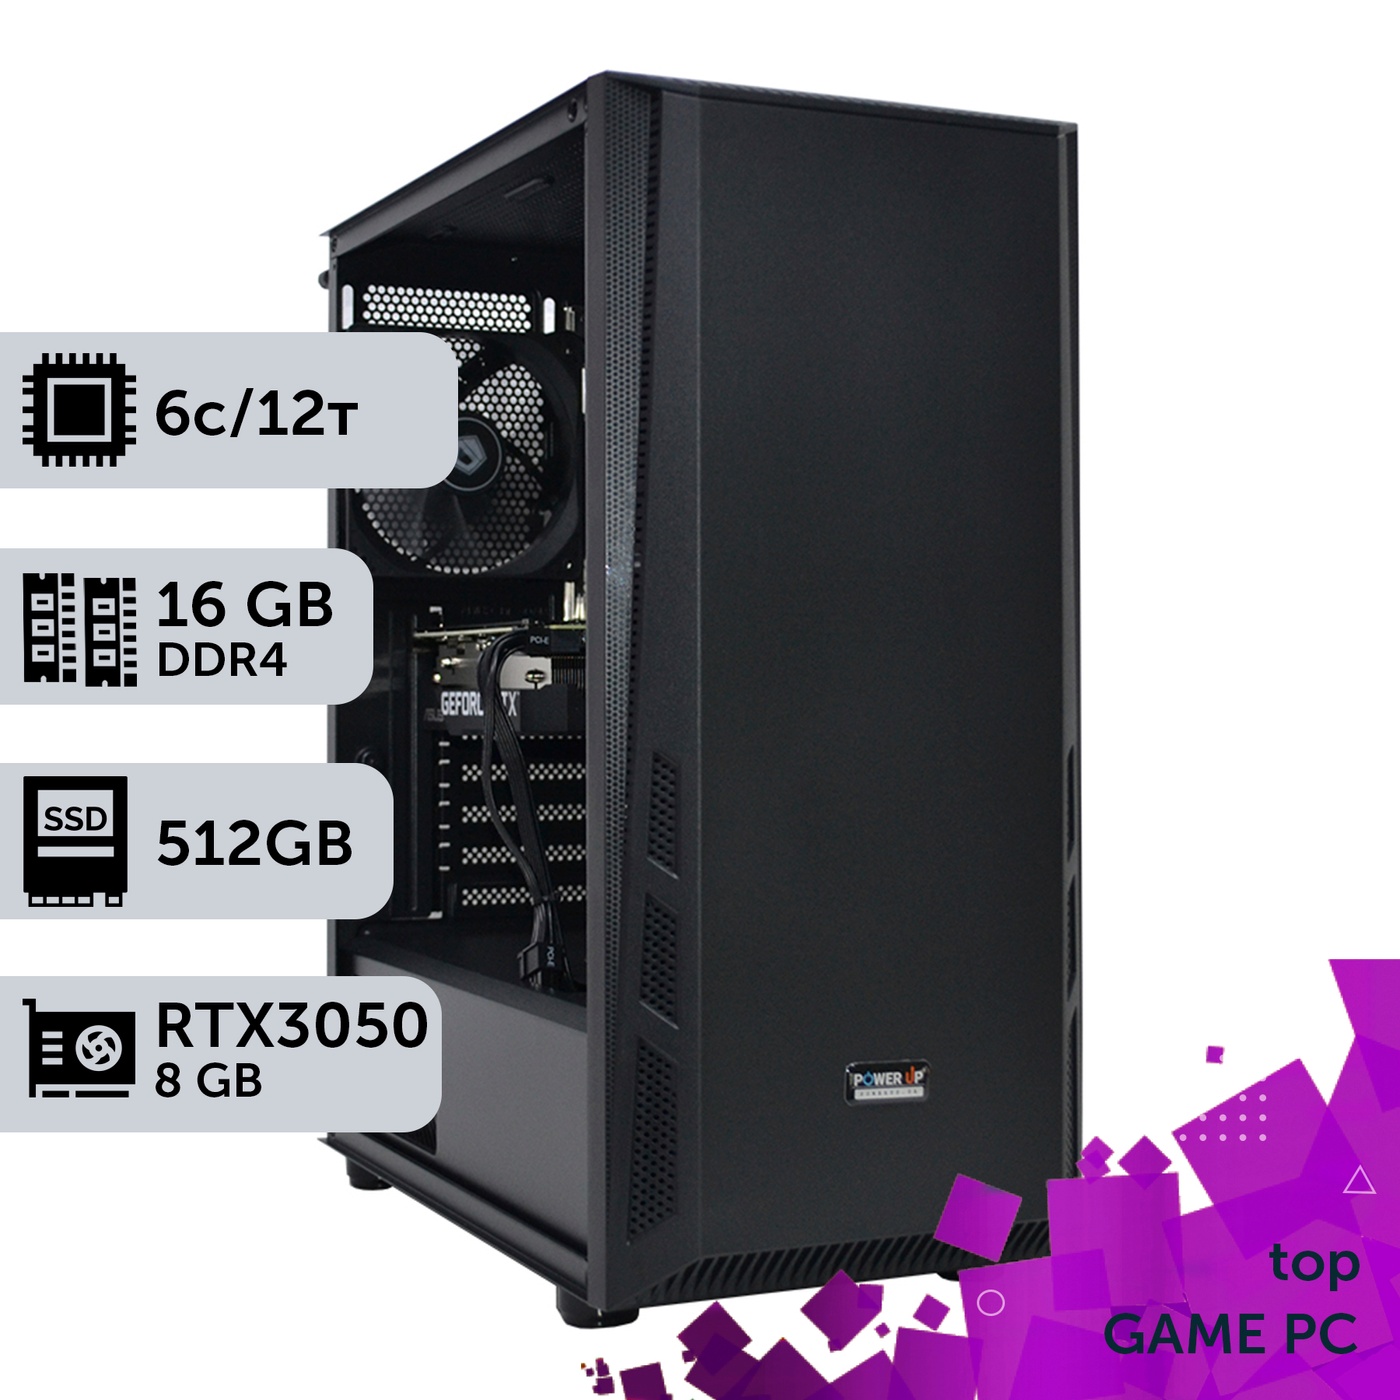 Ігровий комп'ютер GamePC TOP #273 Ryzen 5 5600/16 GB/SSD 512GB/GeForce RTX 3050 8GB